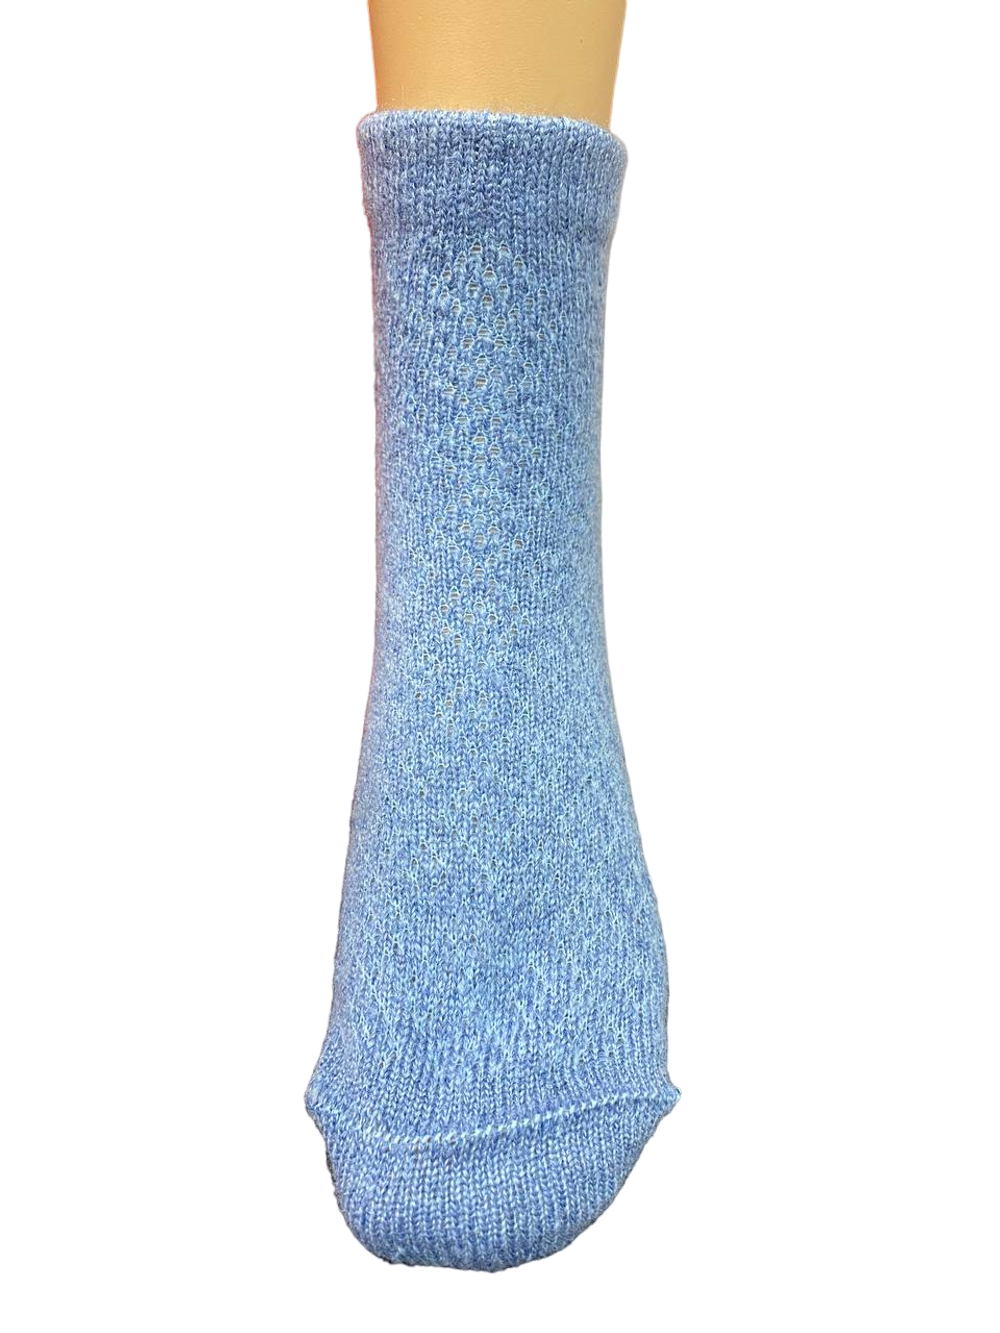 Теплые пуховые носки Н230-04 голубой